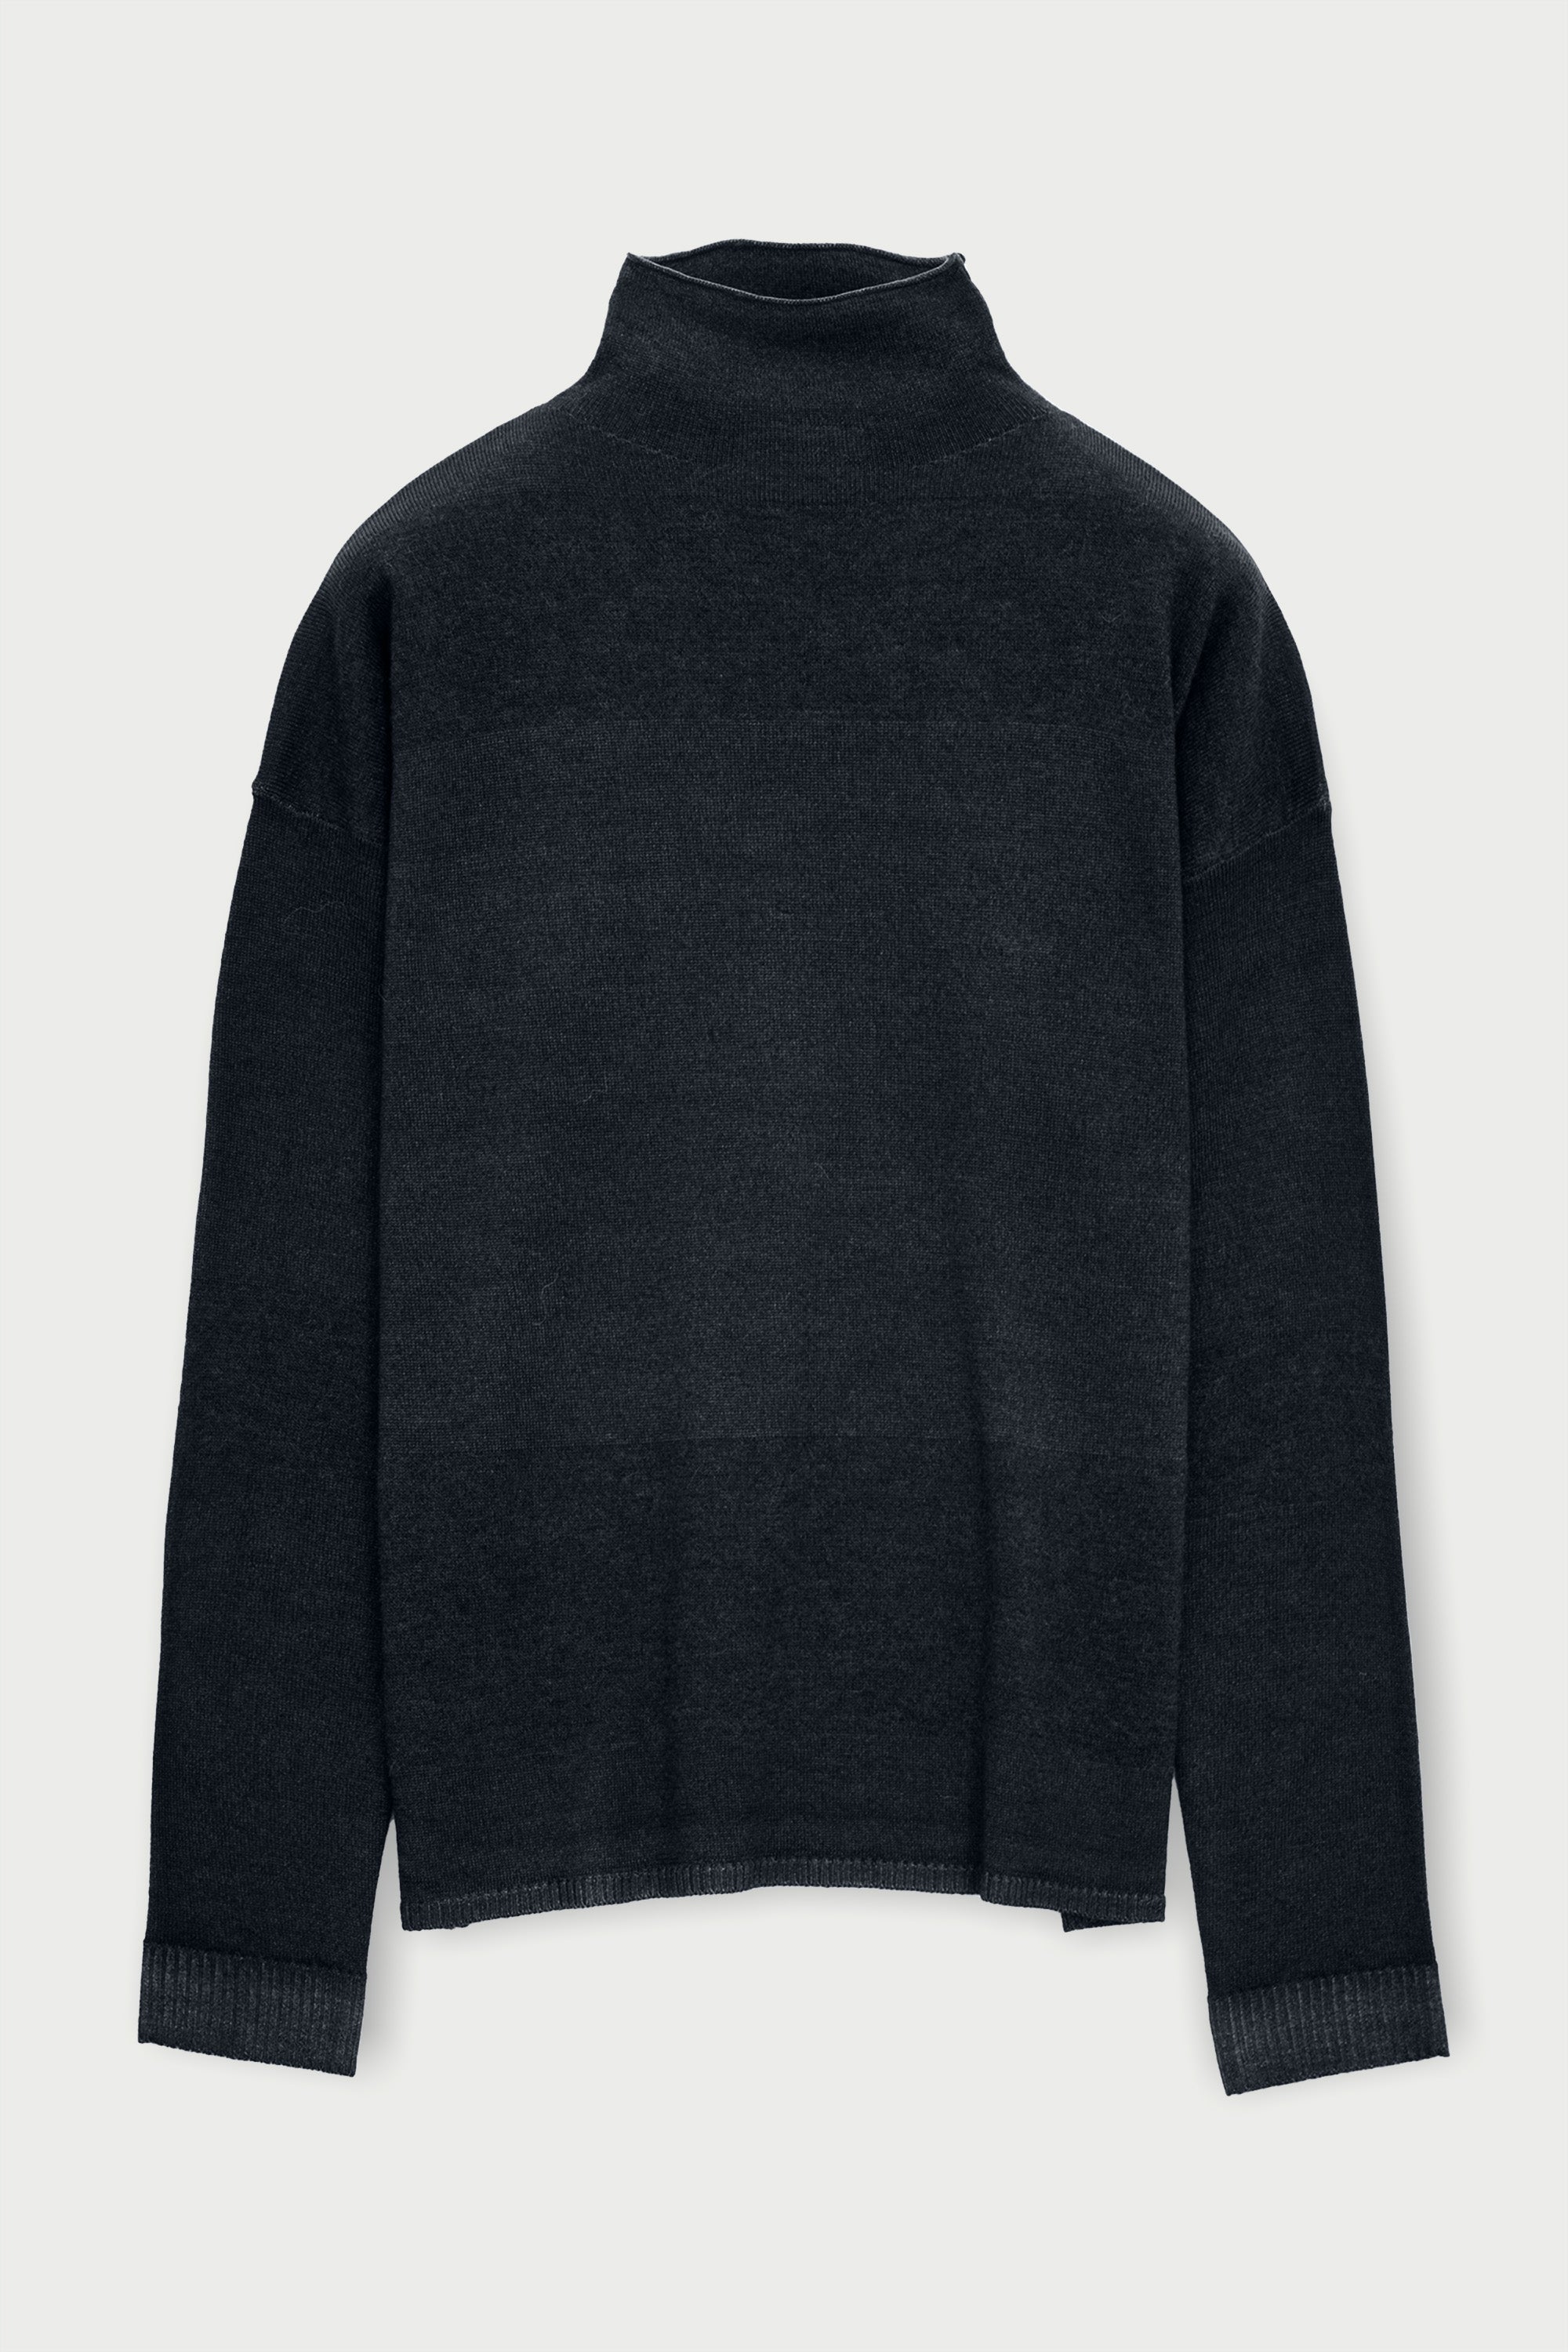 Dess Sweater - Basalt